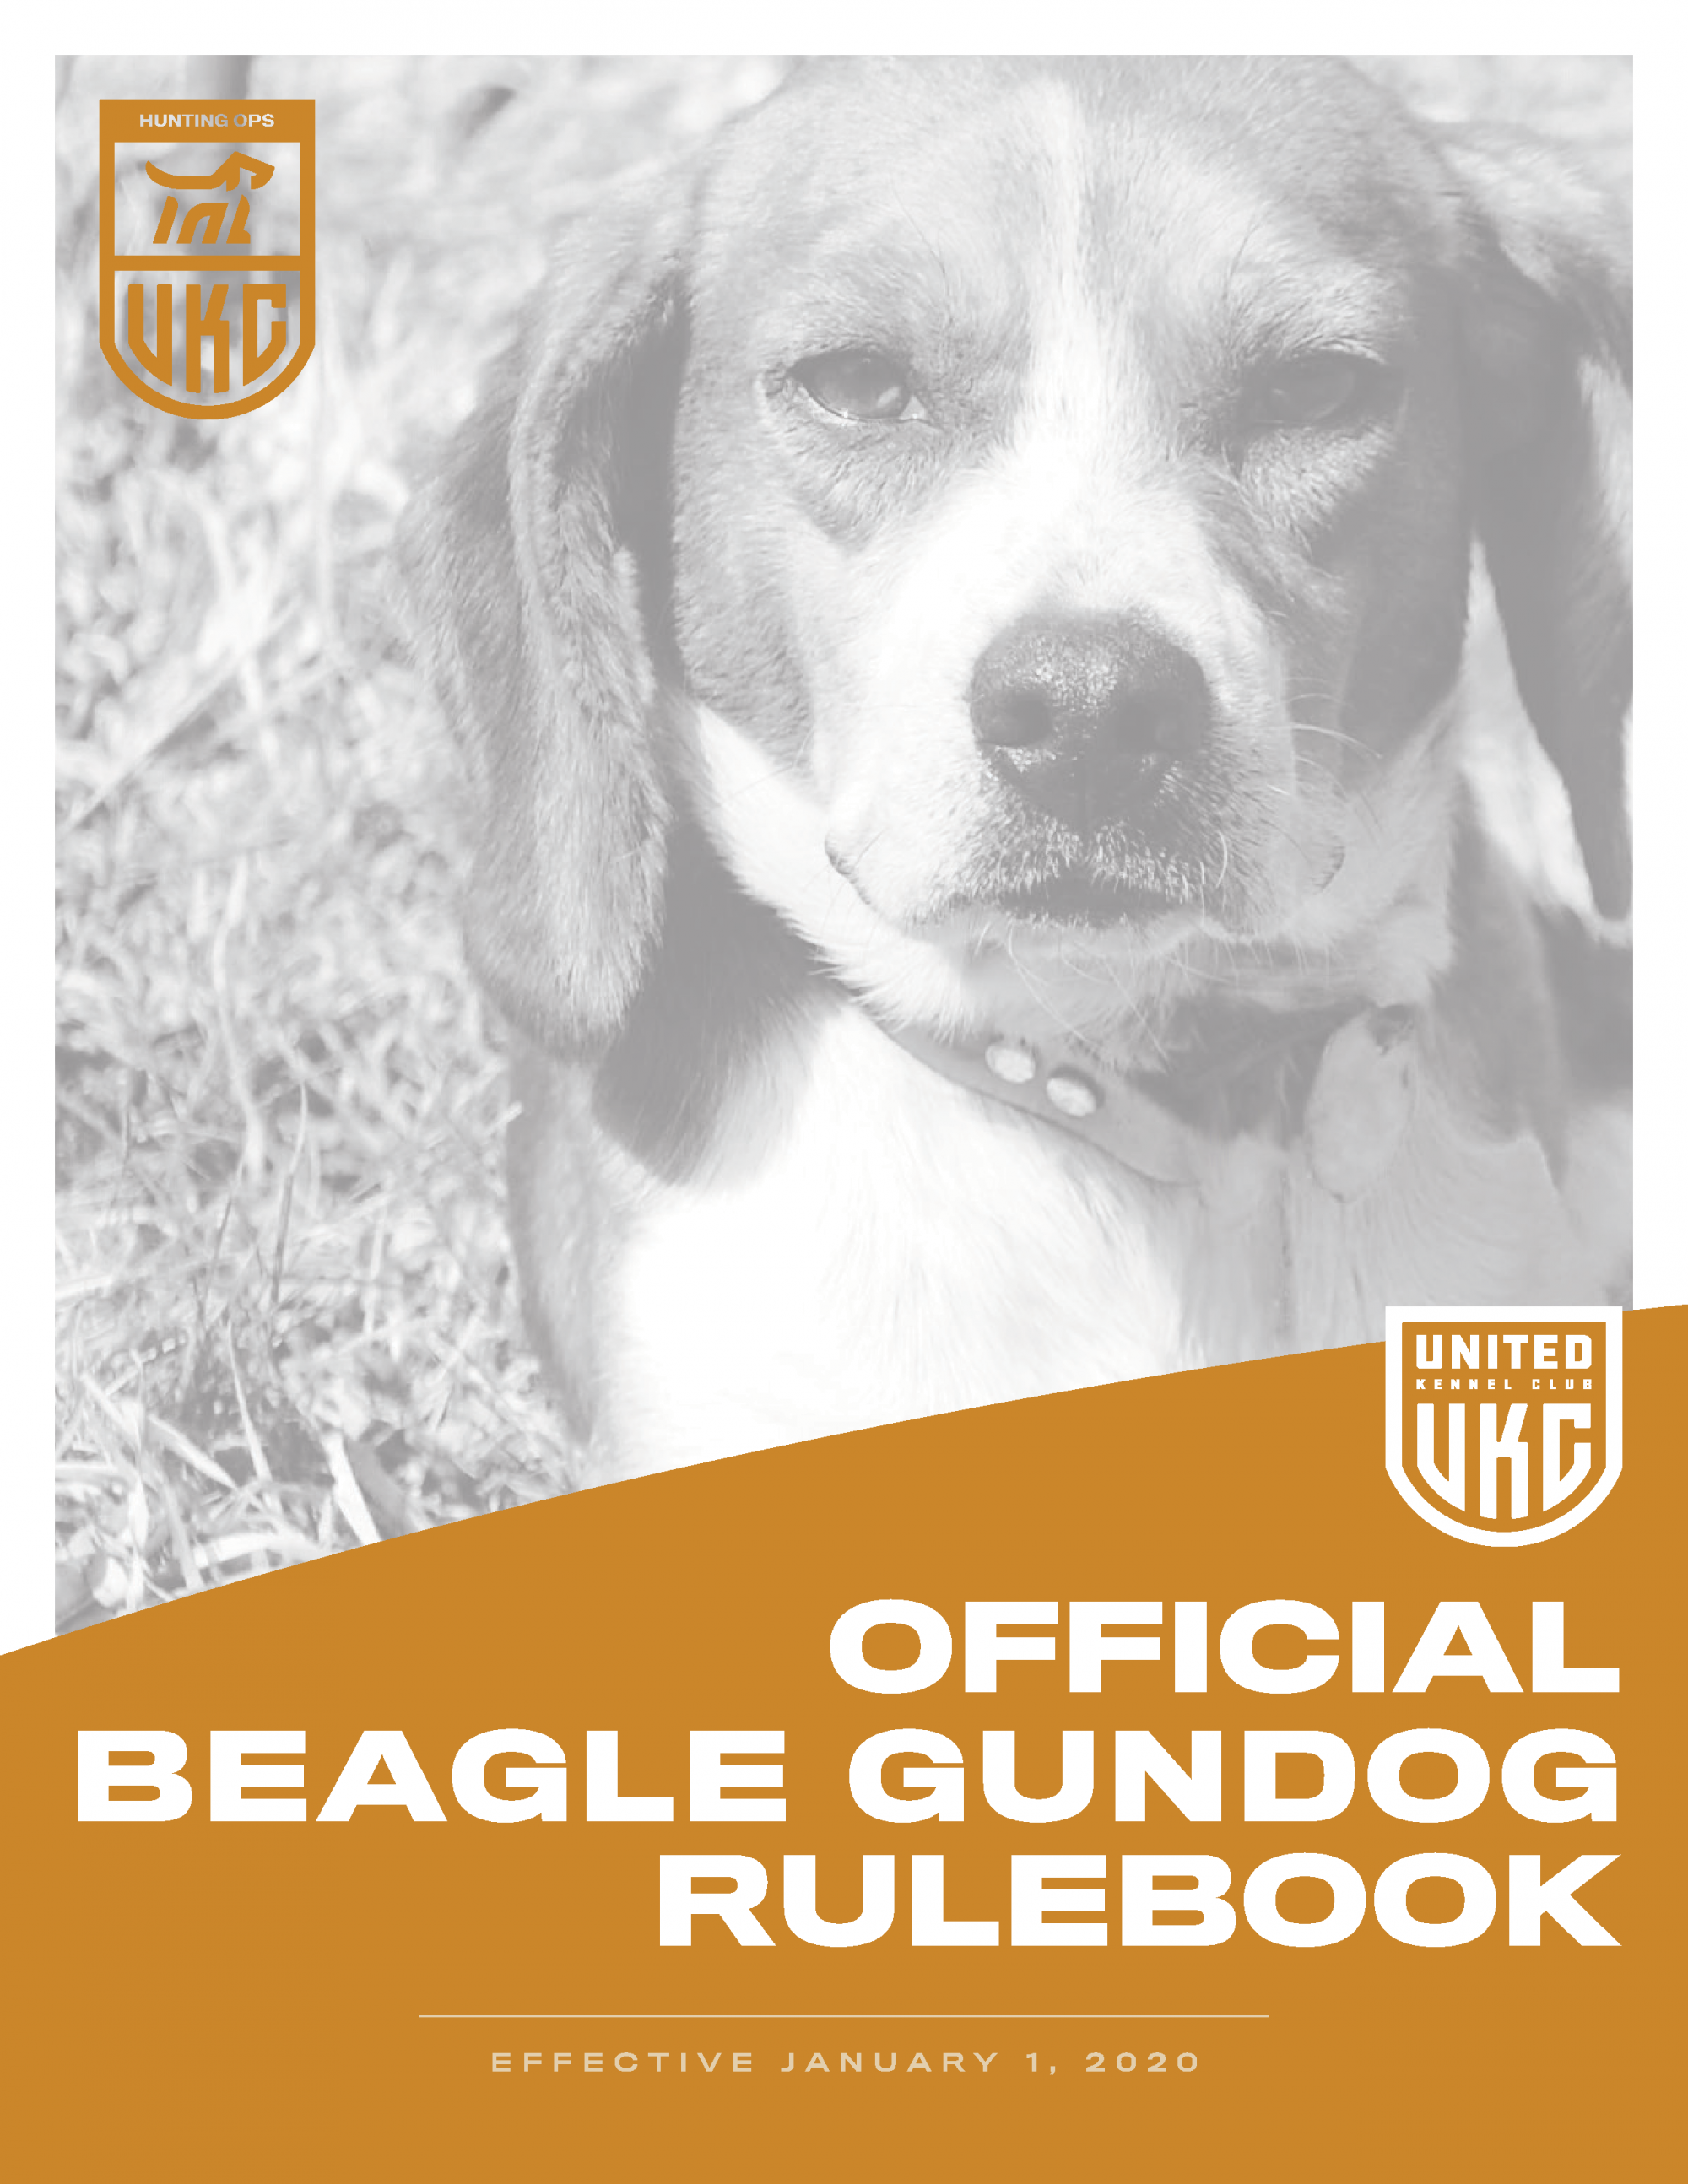 Beagle Gundog rulebook cover